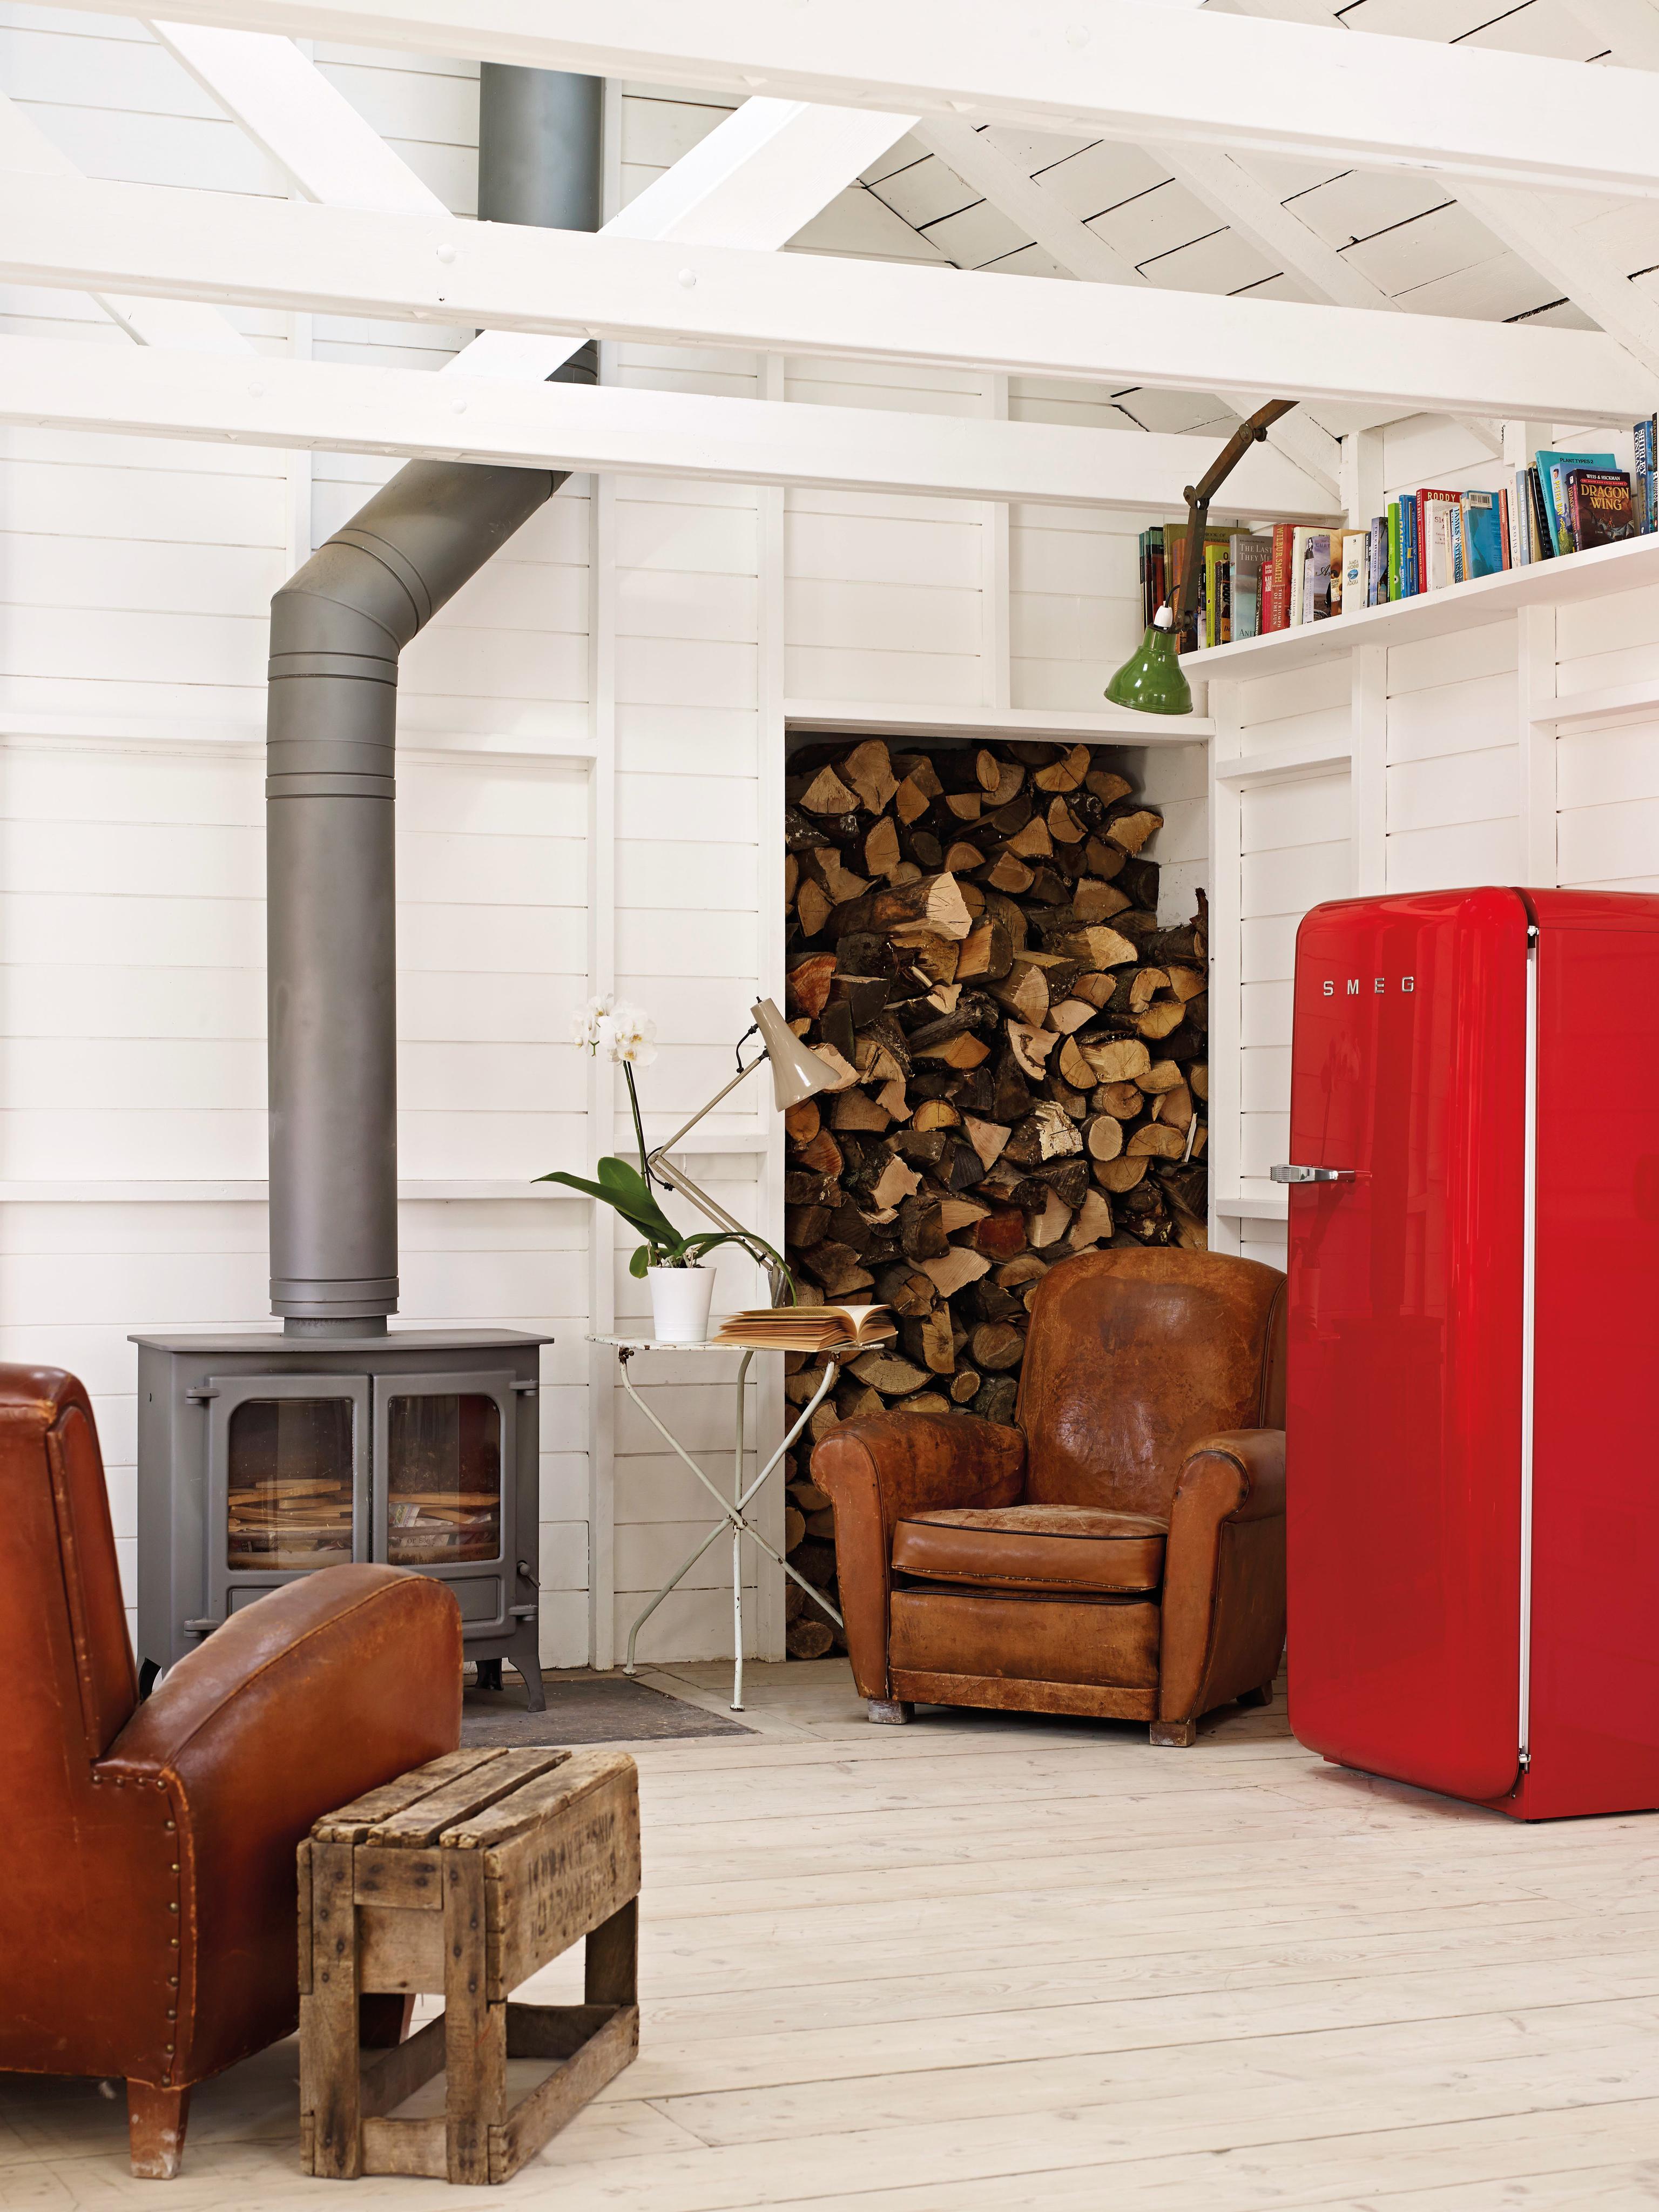 Roter Retro-Kühlschrank im Wohnzimmer #retro #kühlschrank #retrokühlschrank ©Smeg